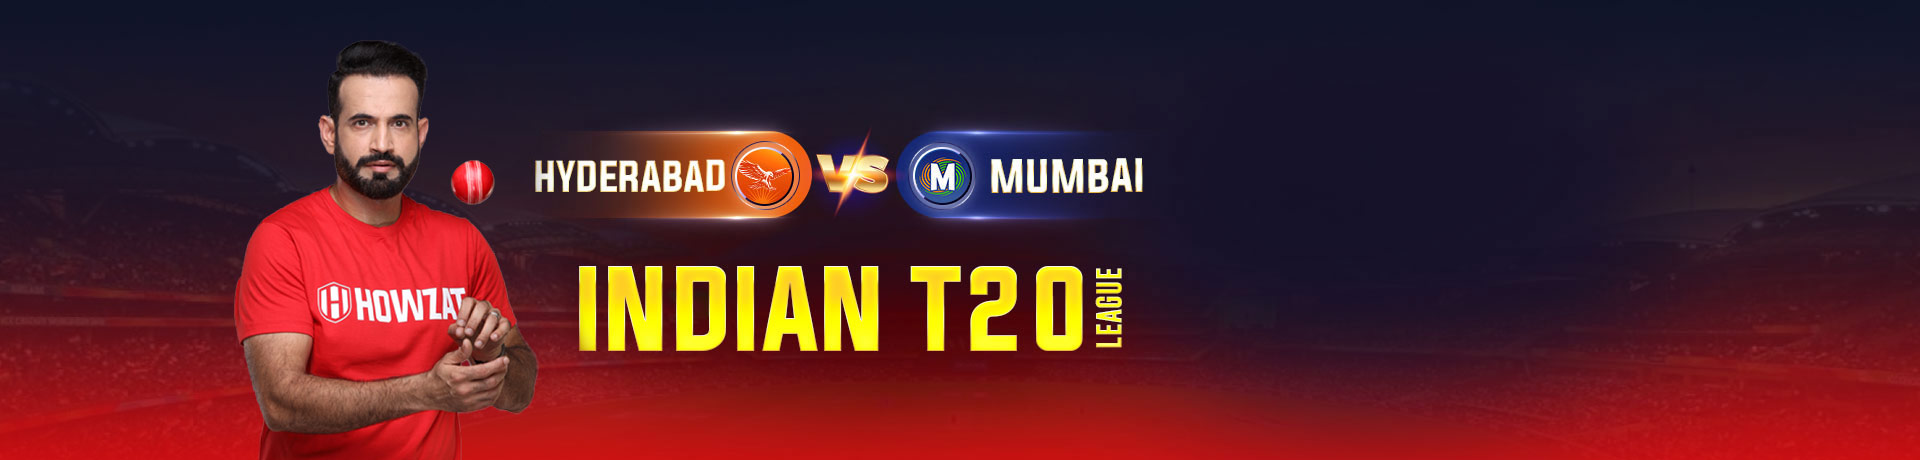 Hyderabad vs Mumbai Indian T20 League